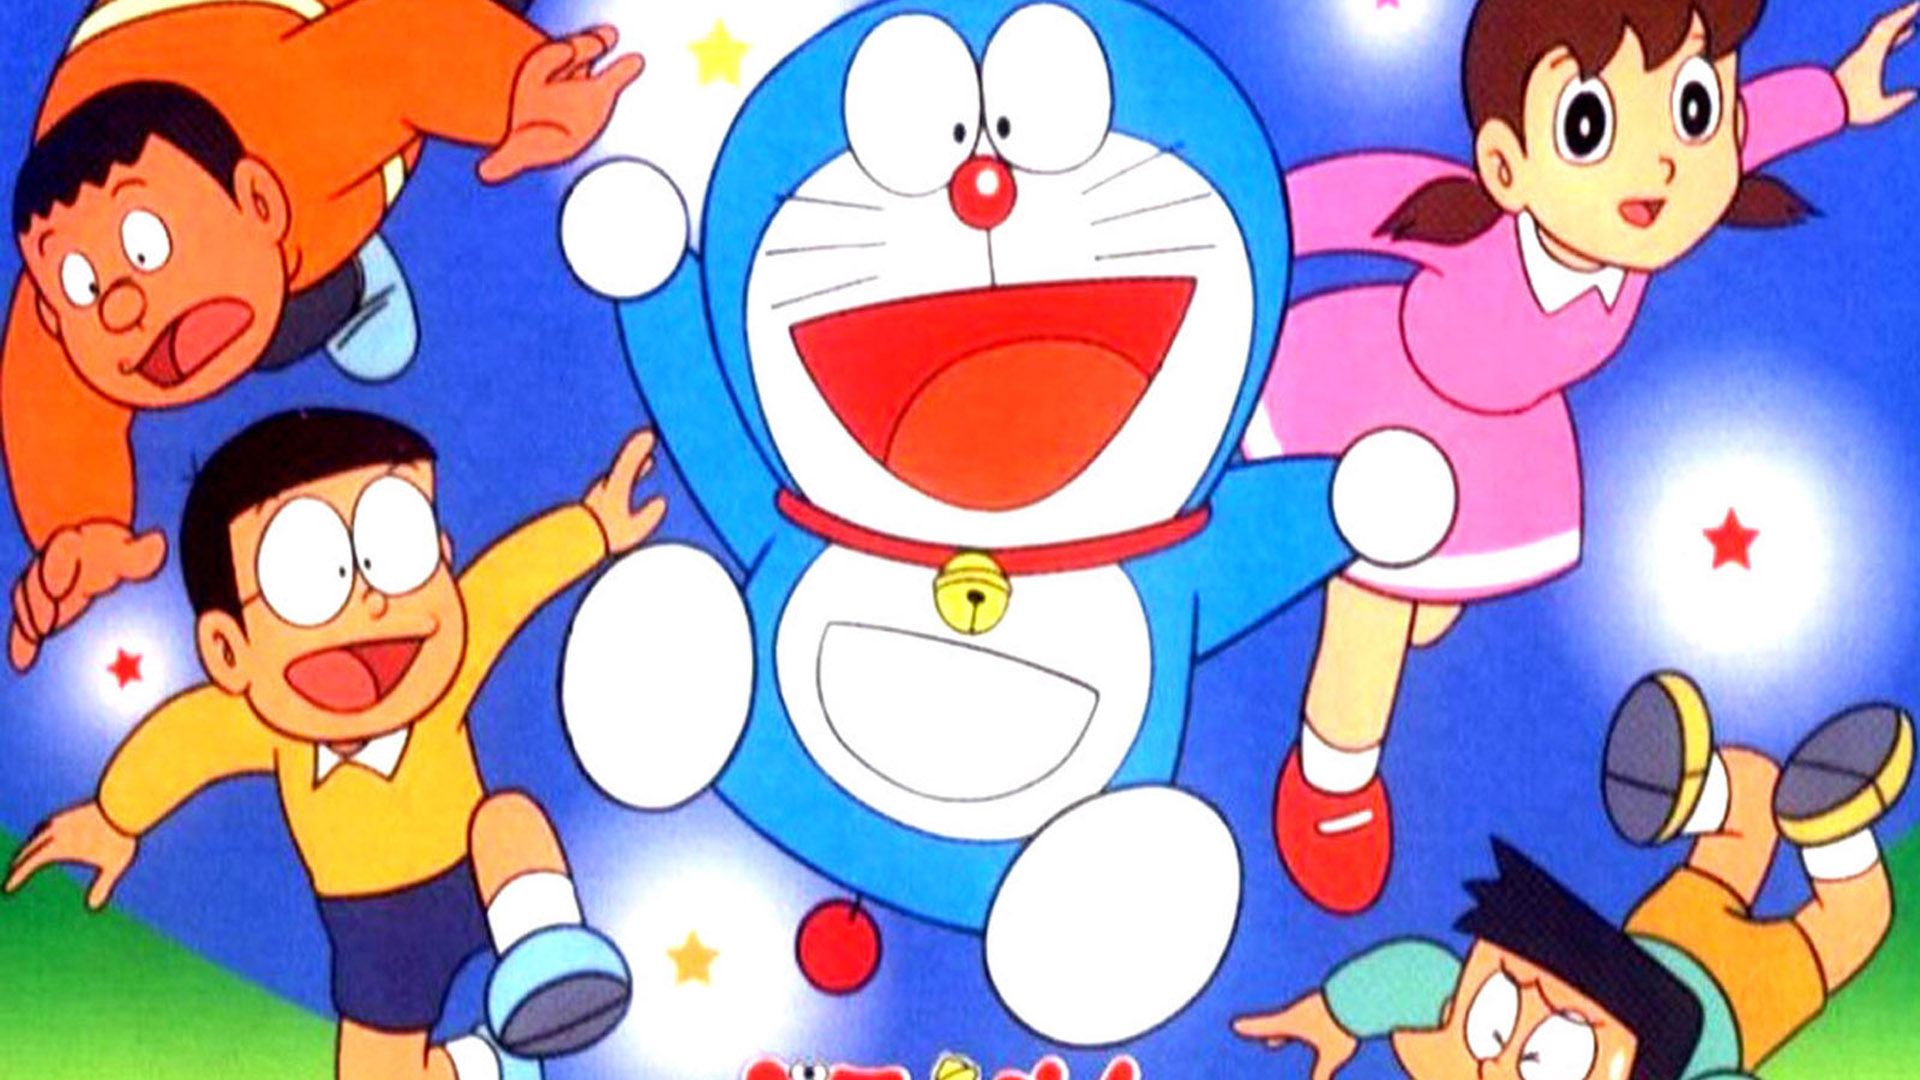 FHDQ Doraemon Image, Wallpaper for Desktop, B.SCB WP&BG Collection